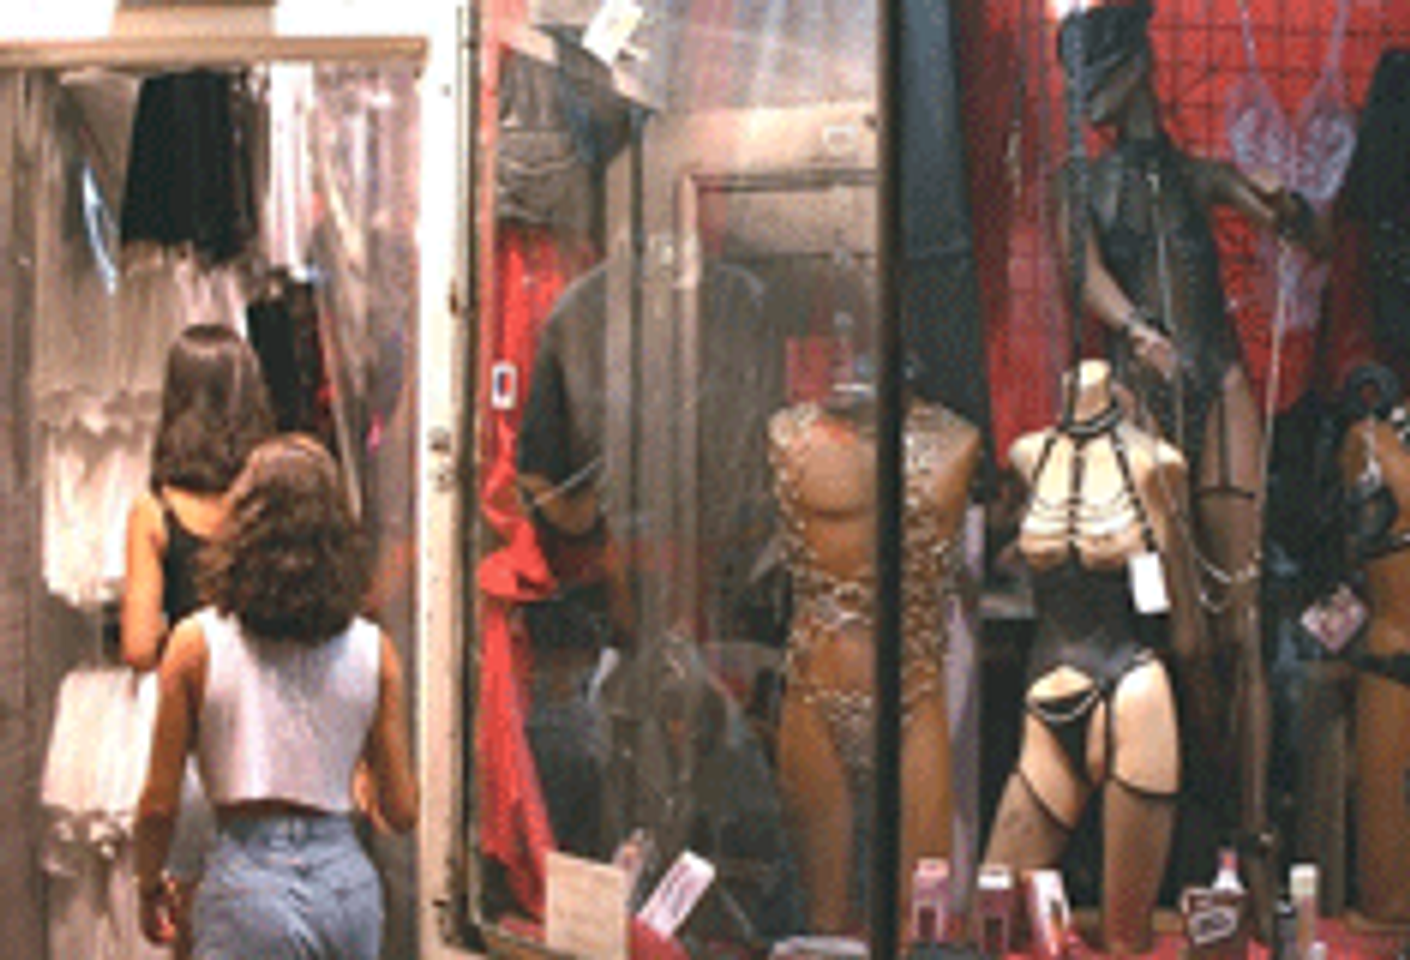 New York City Boosts Sex Shop Monitors